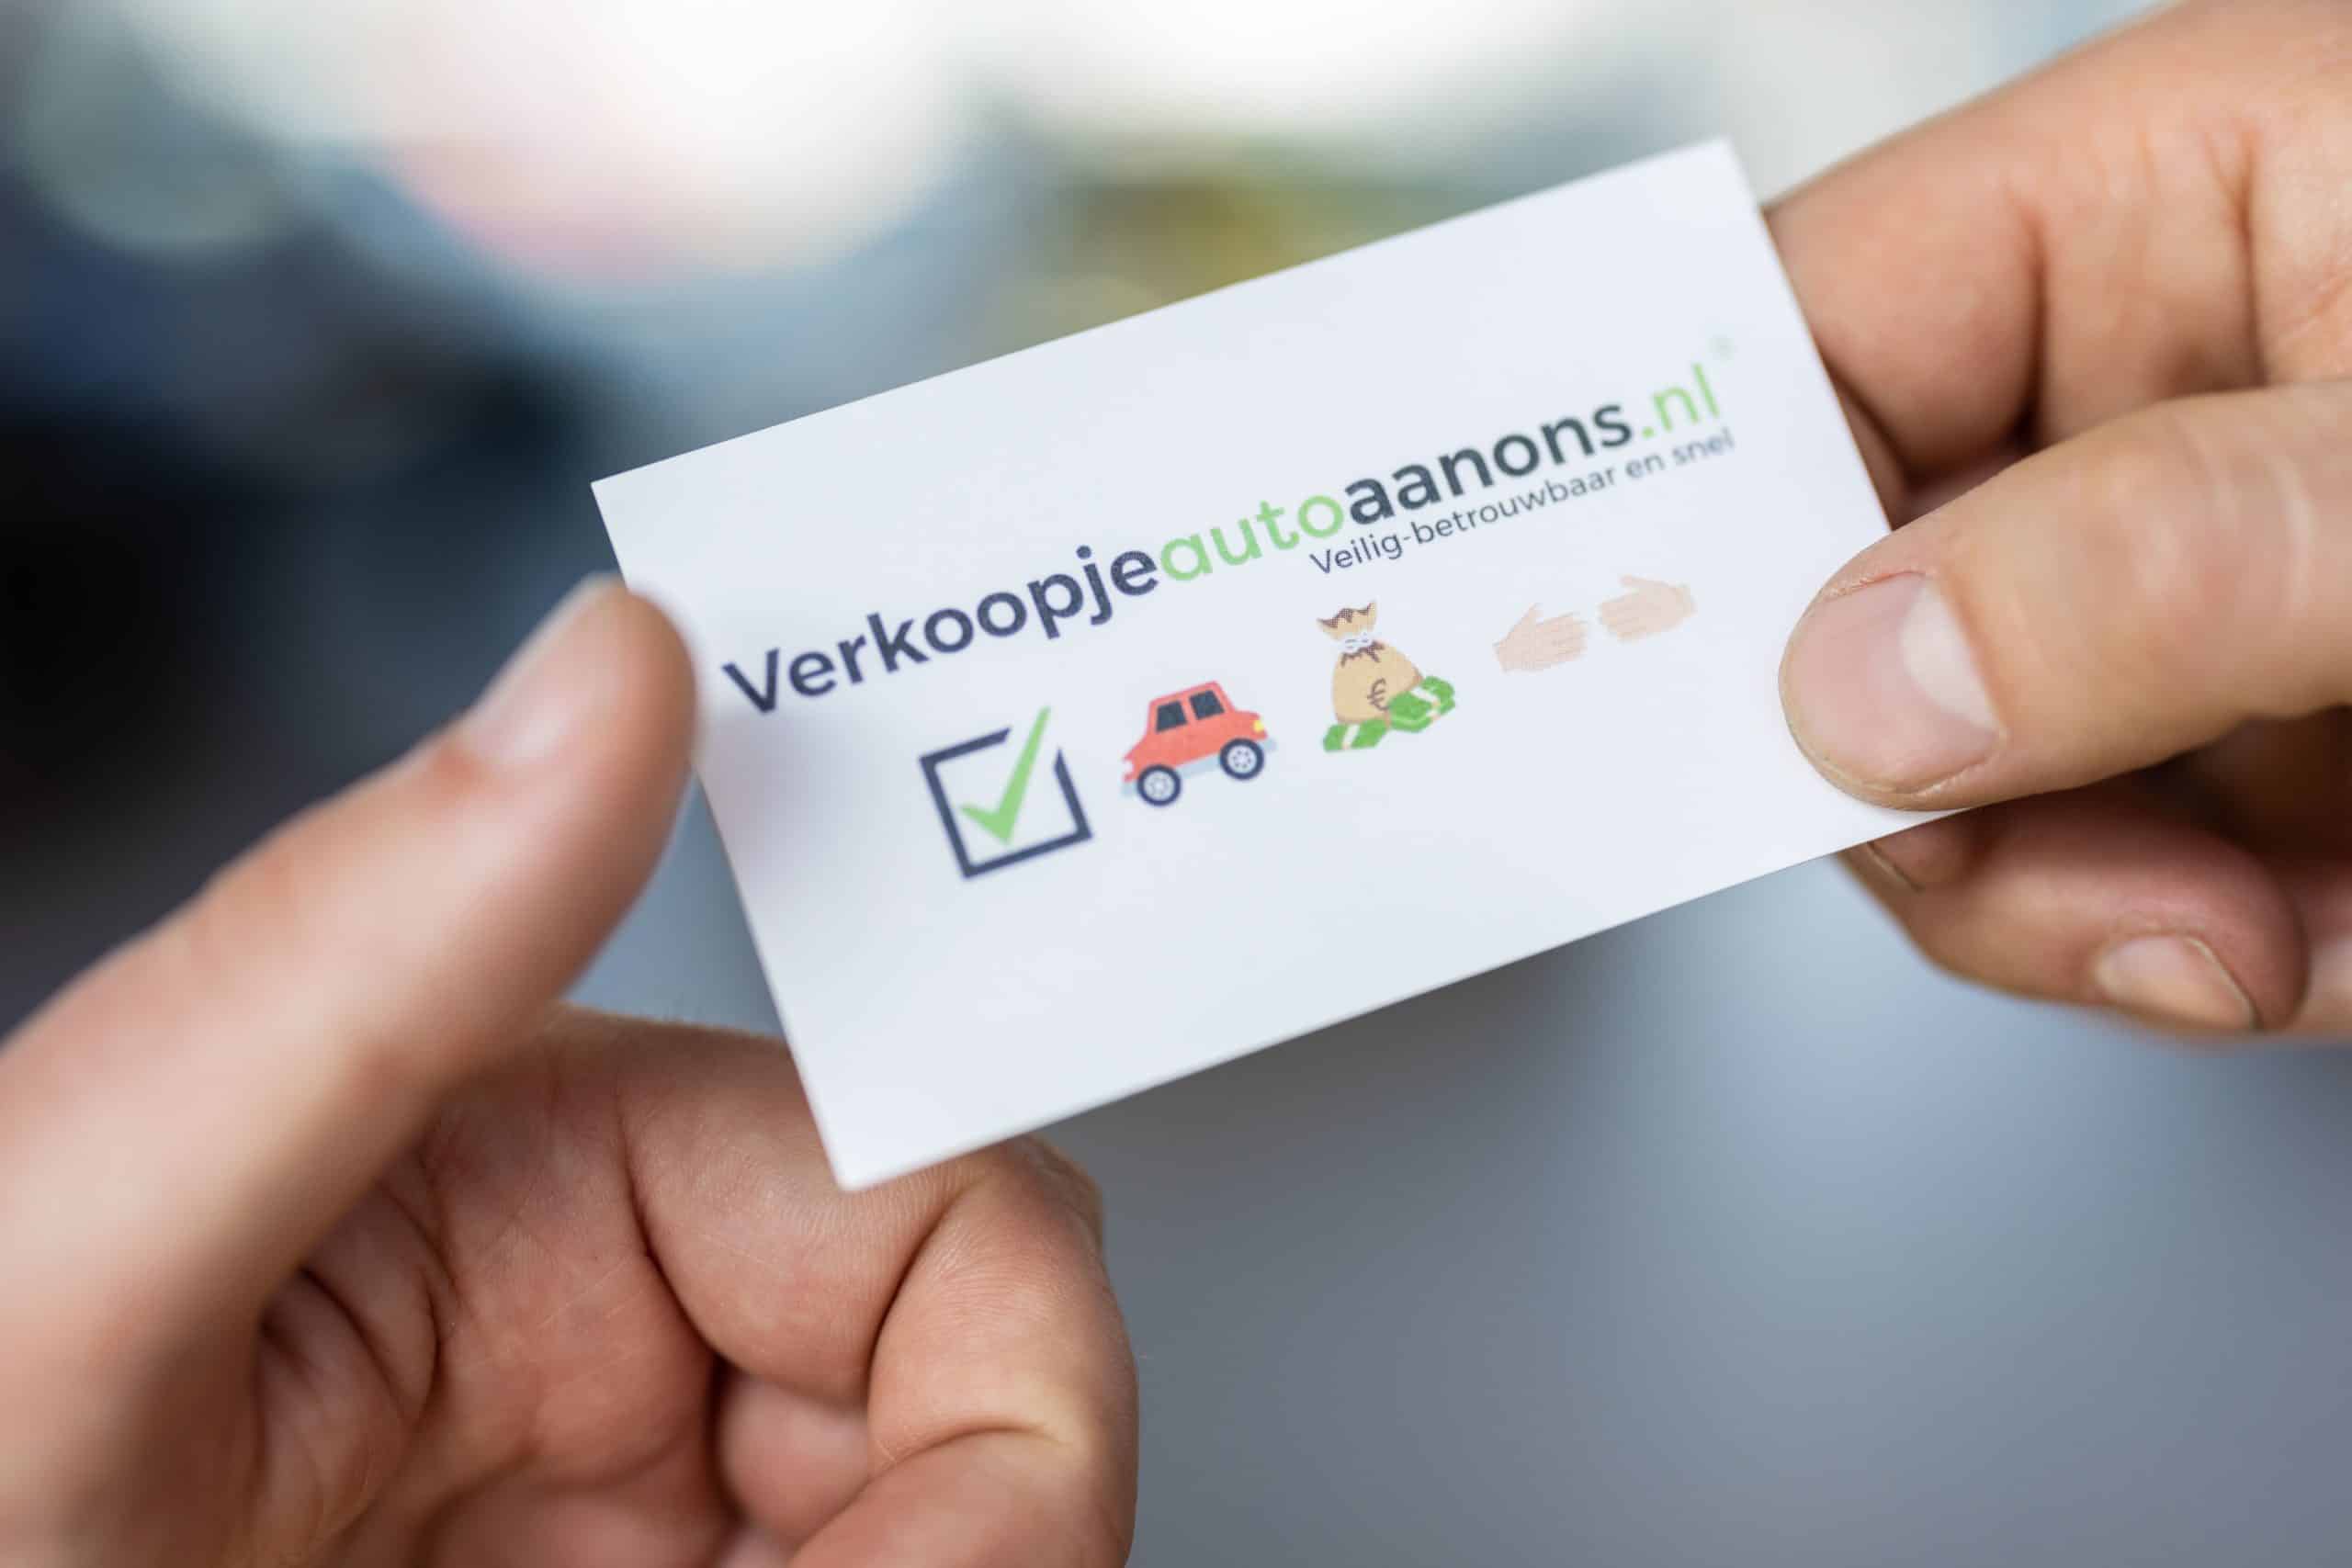 Autoverkoop sites: Verkoopjeautoaanons.nl vs de ANWB